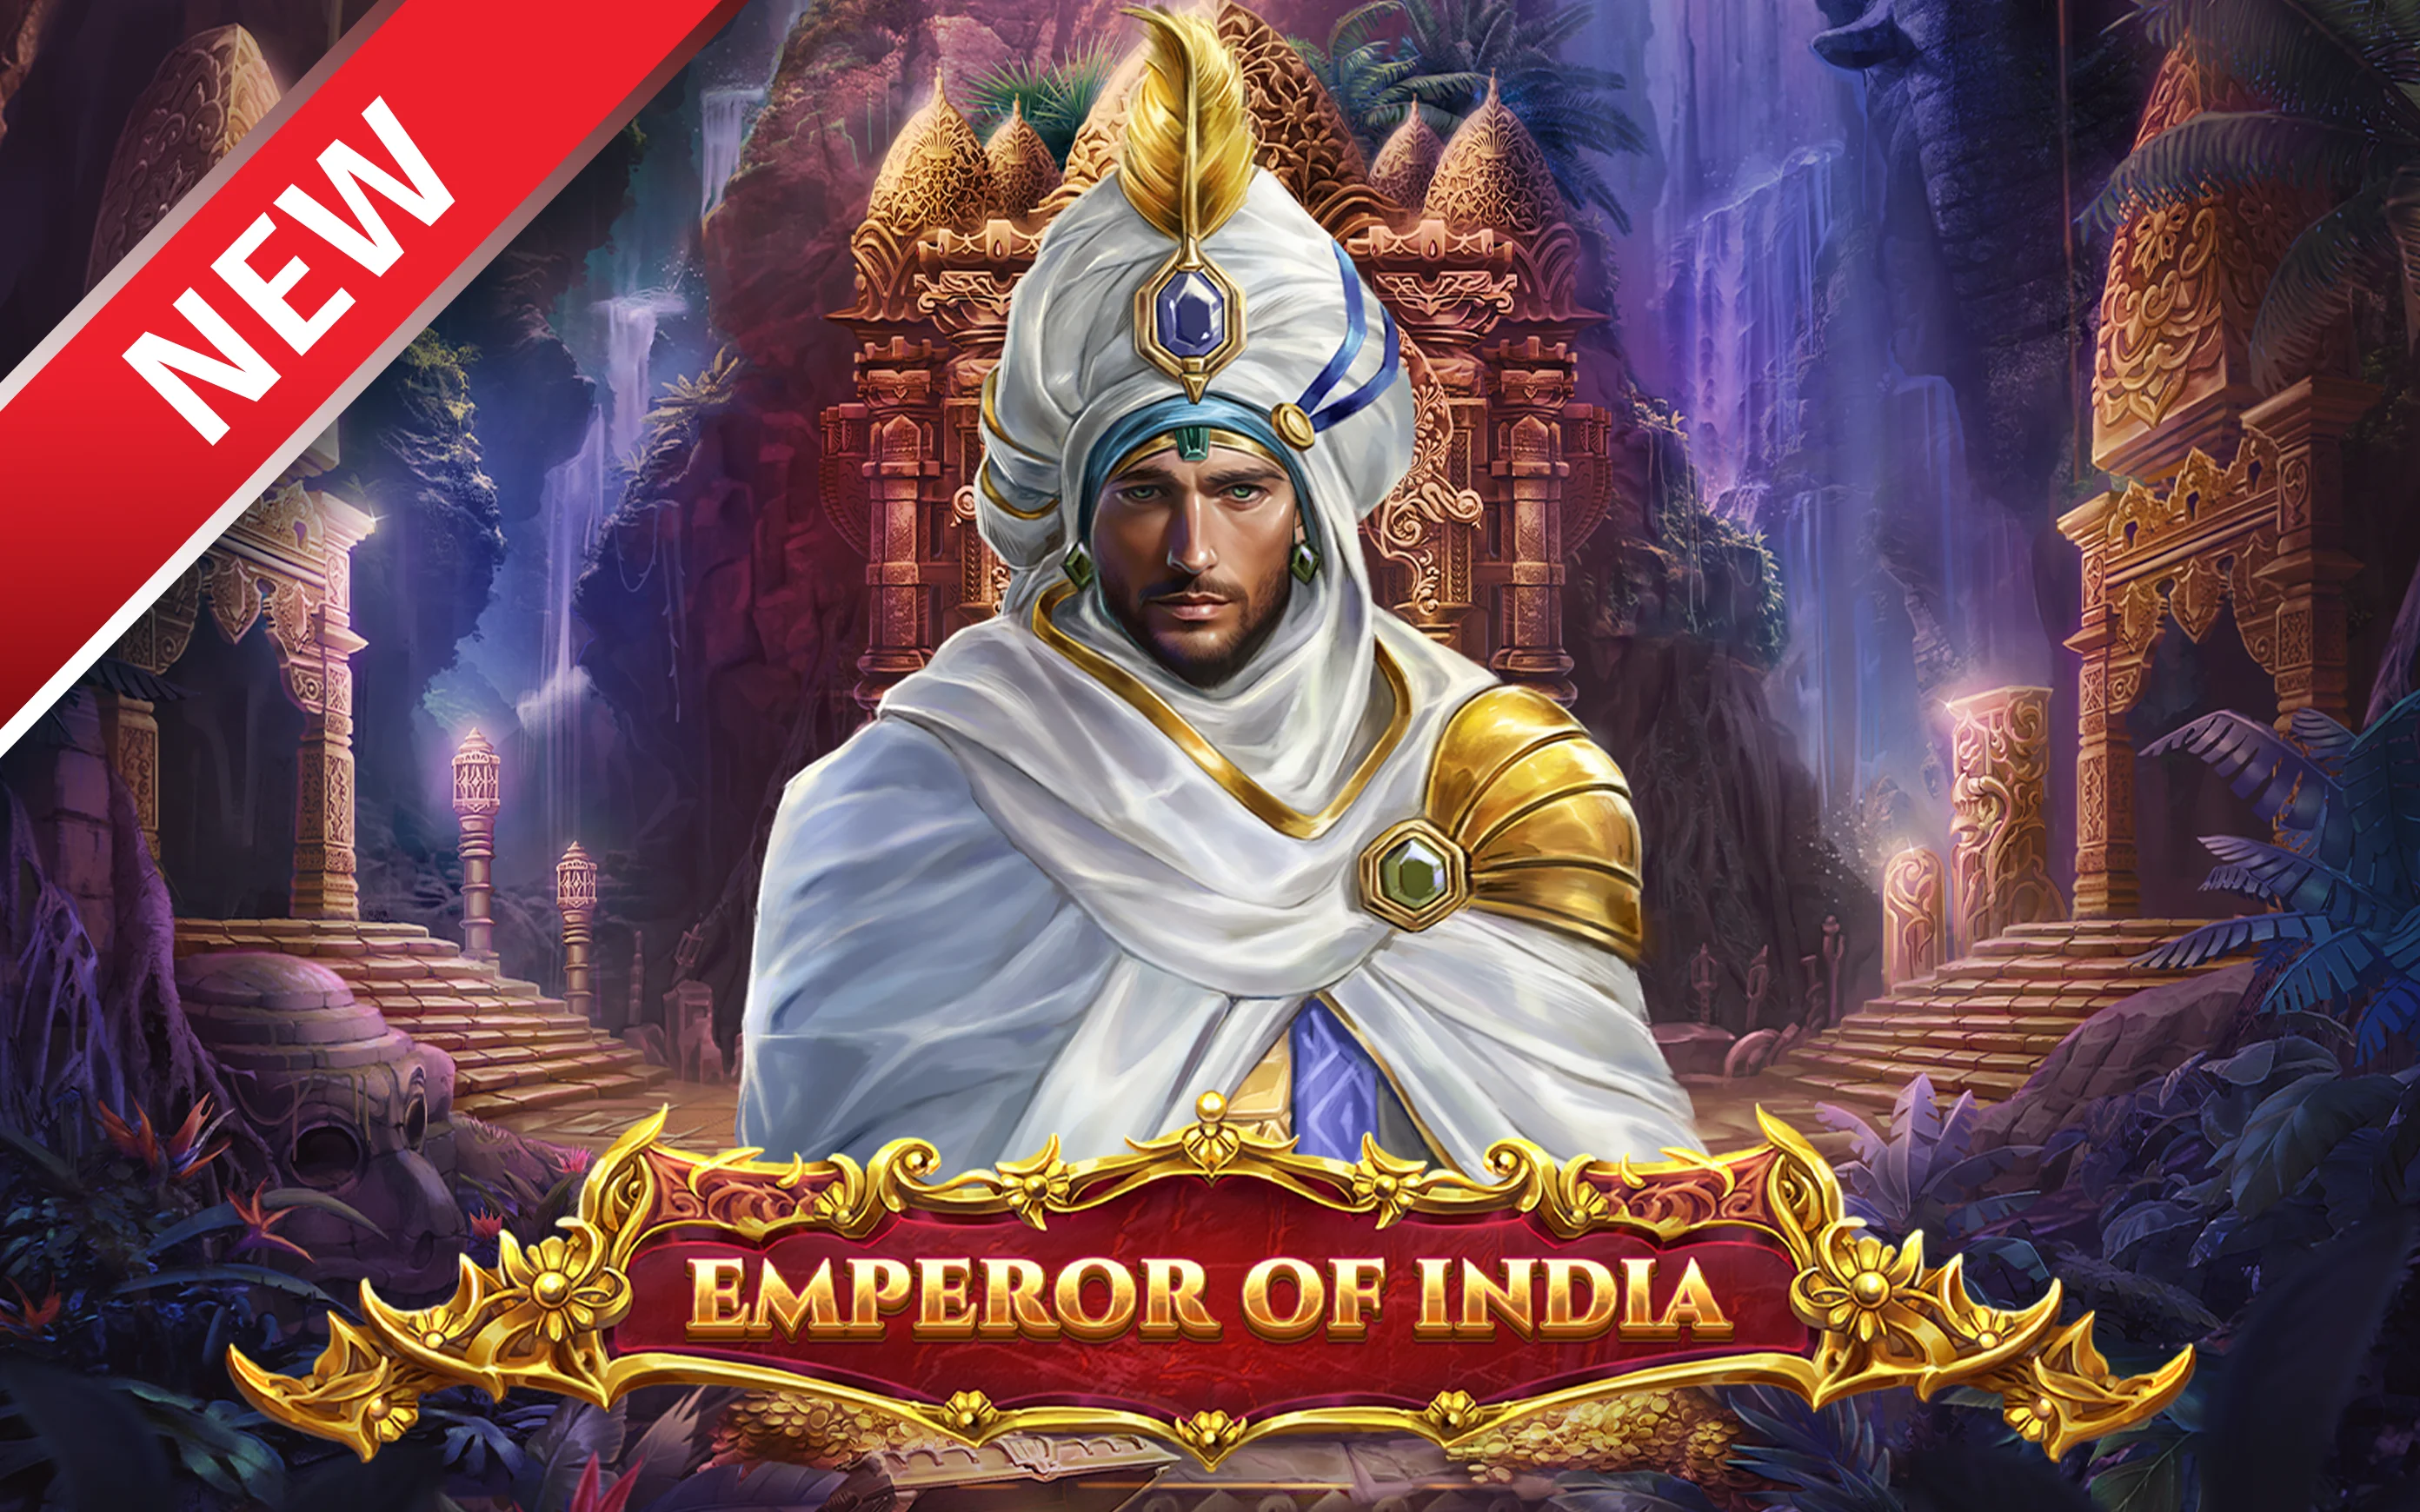 Joacă Emperor of India în cazinoul online Starcasino.be